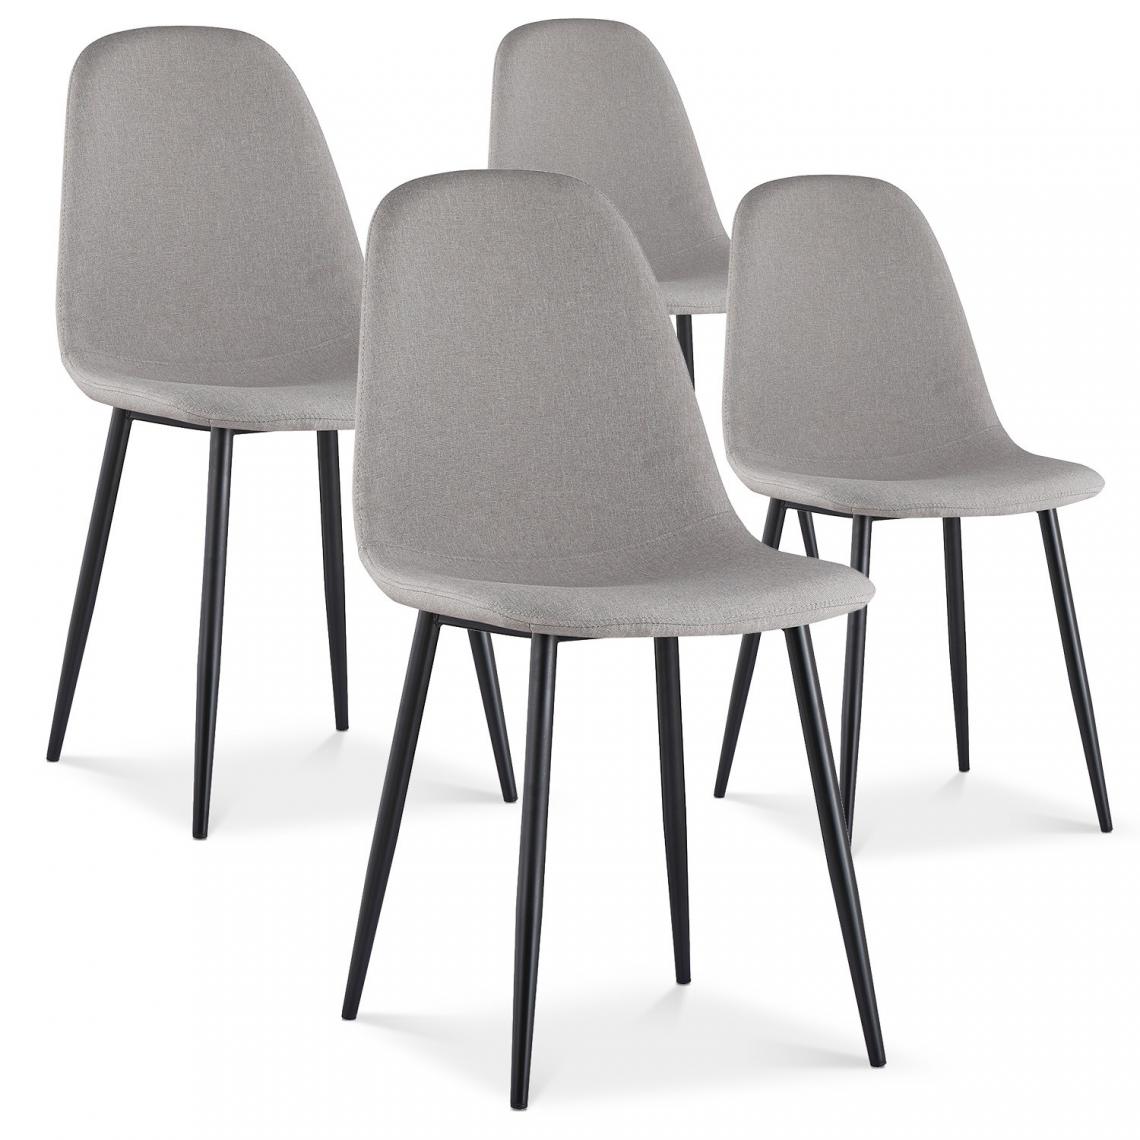 marque generique - Lot de 4 chaises Bali tissu gris pieds noir - Chaises